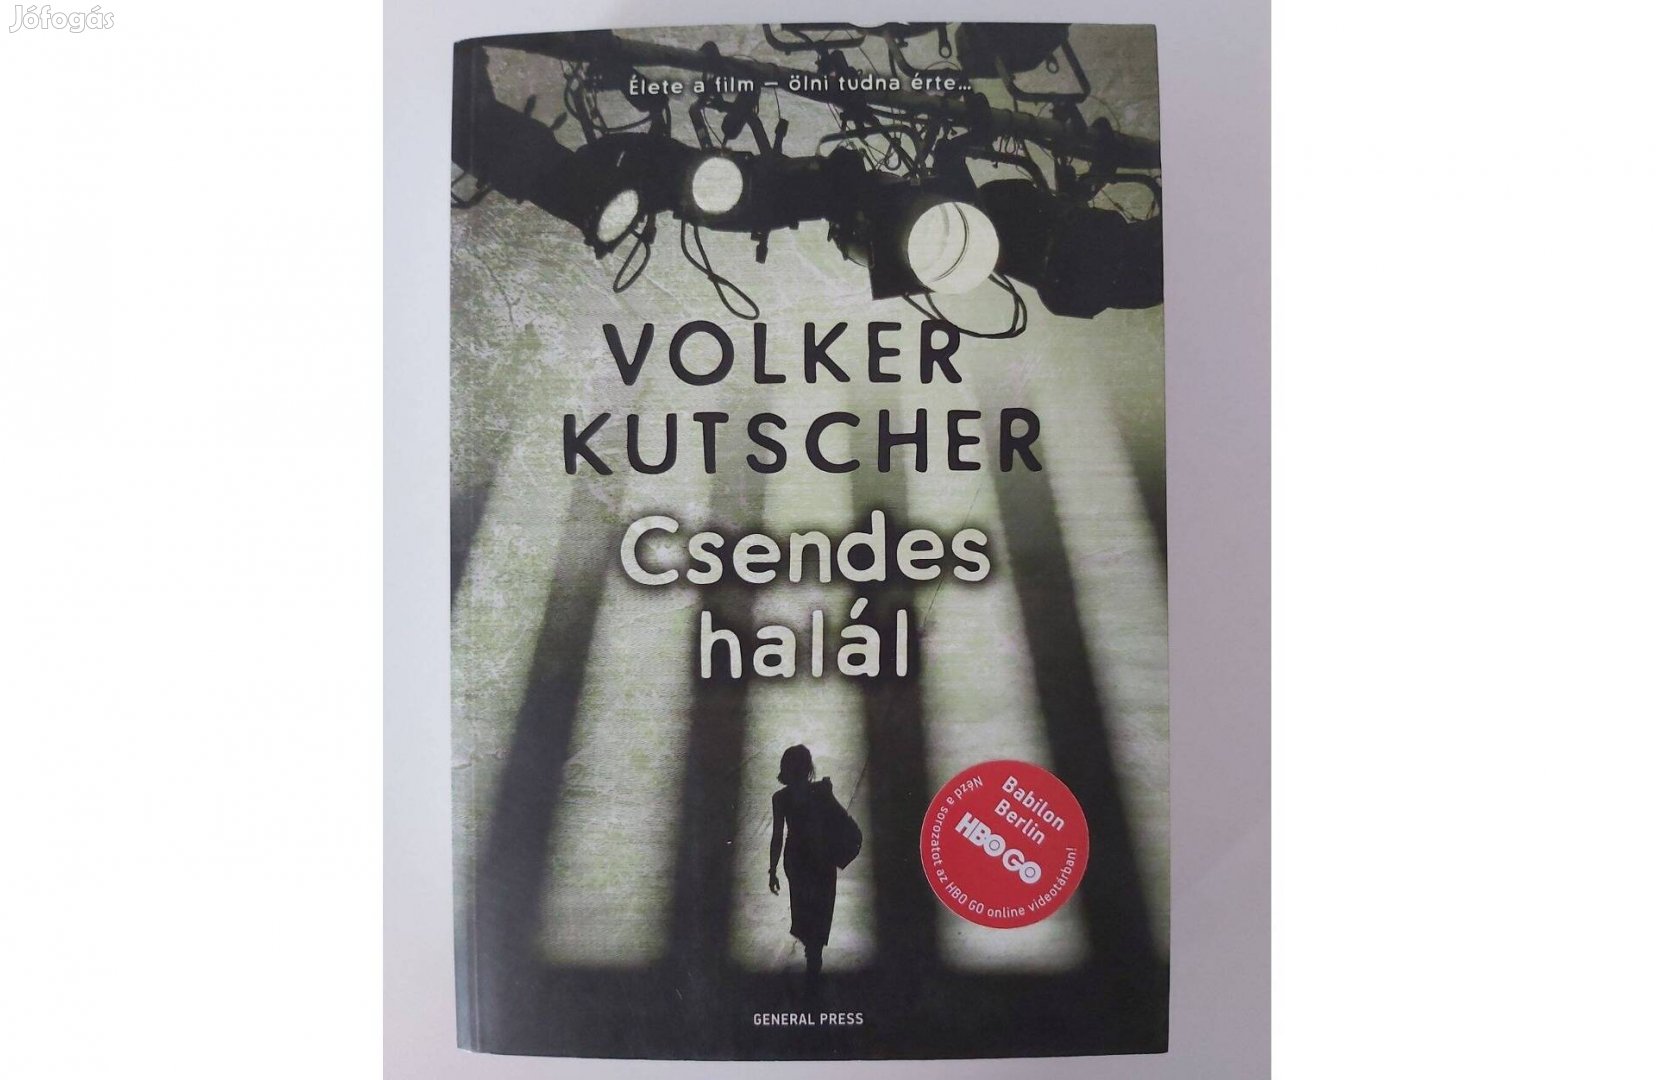 Volker Kutscher: Csendes halál